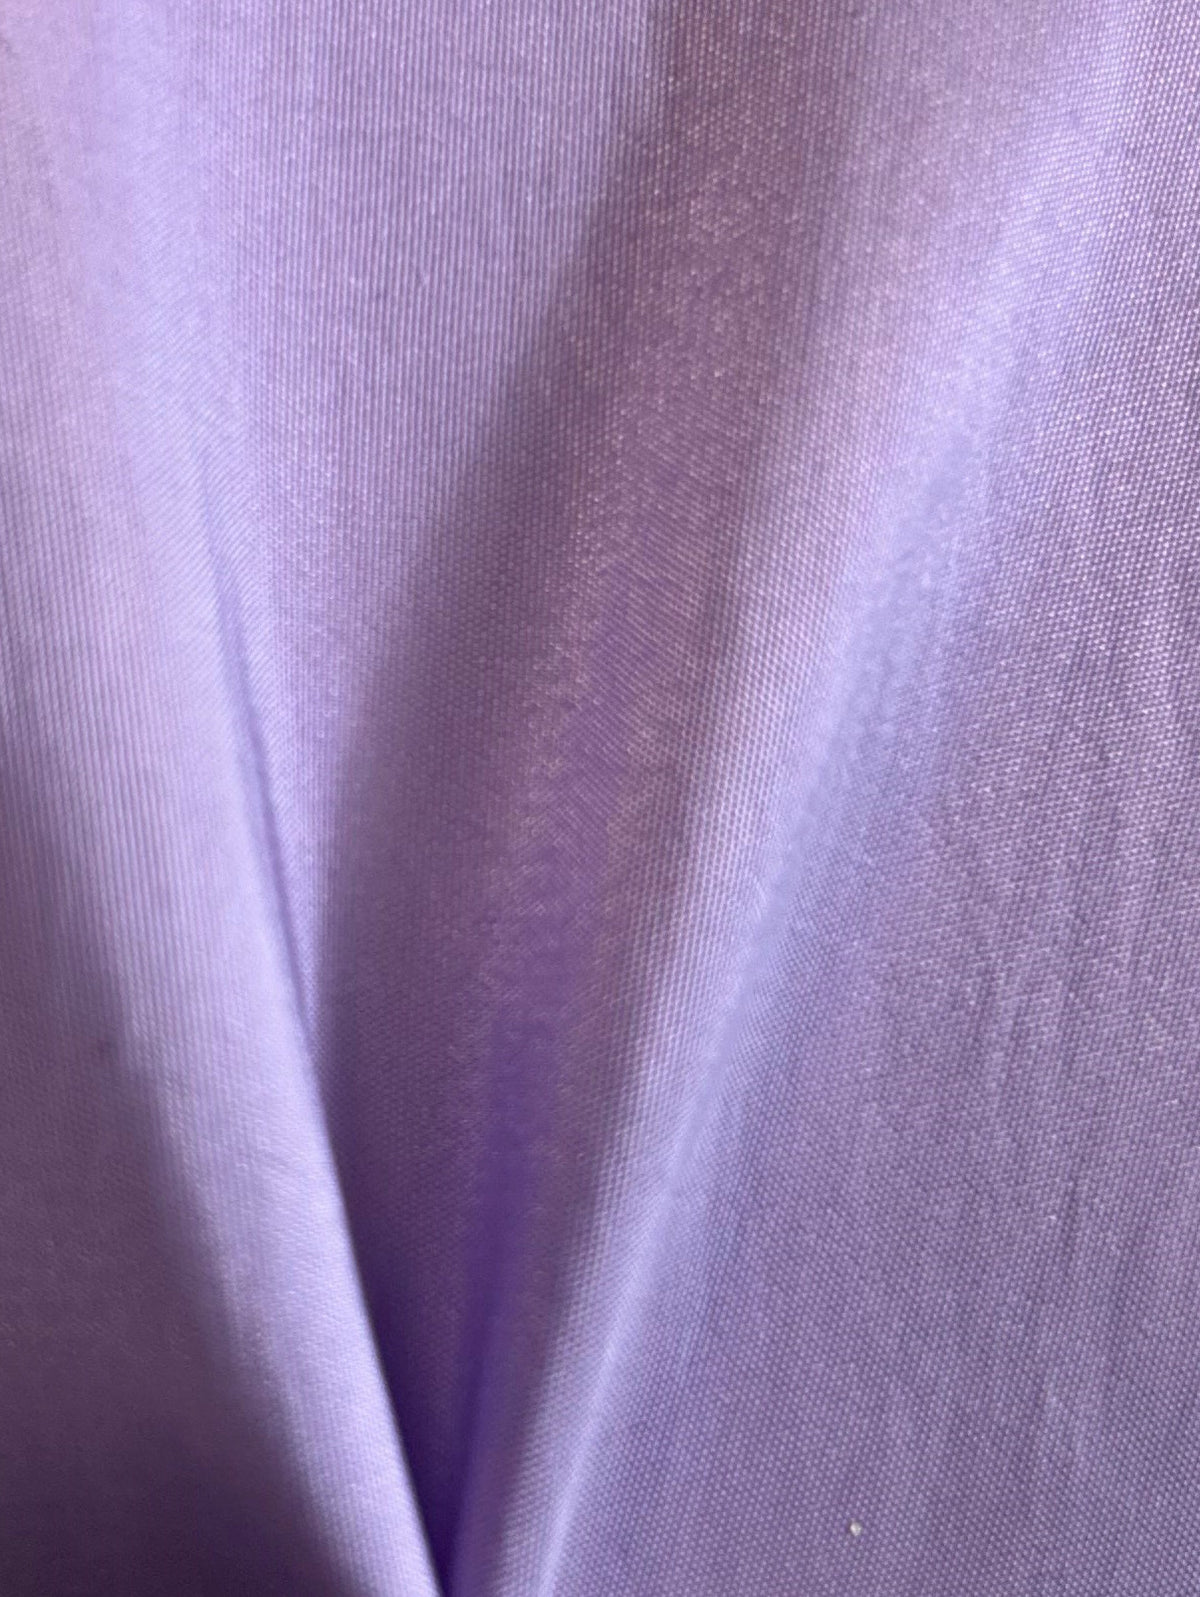 Lavender Taffeta - Radiance